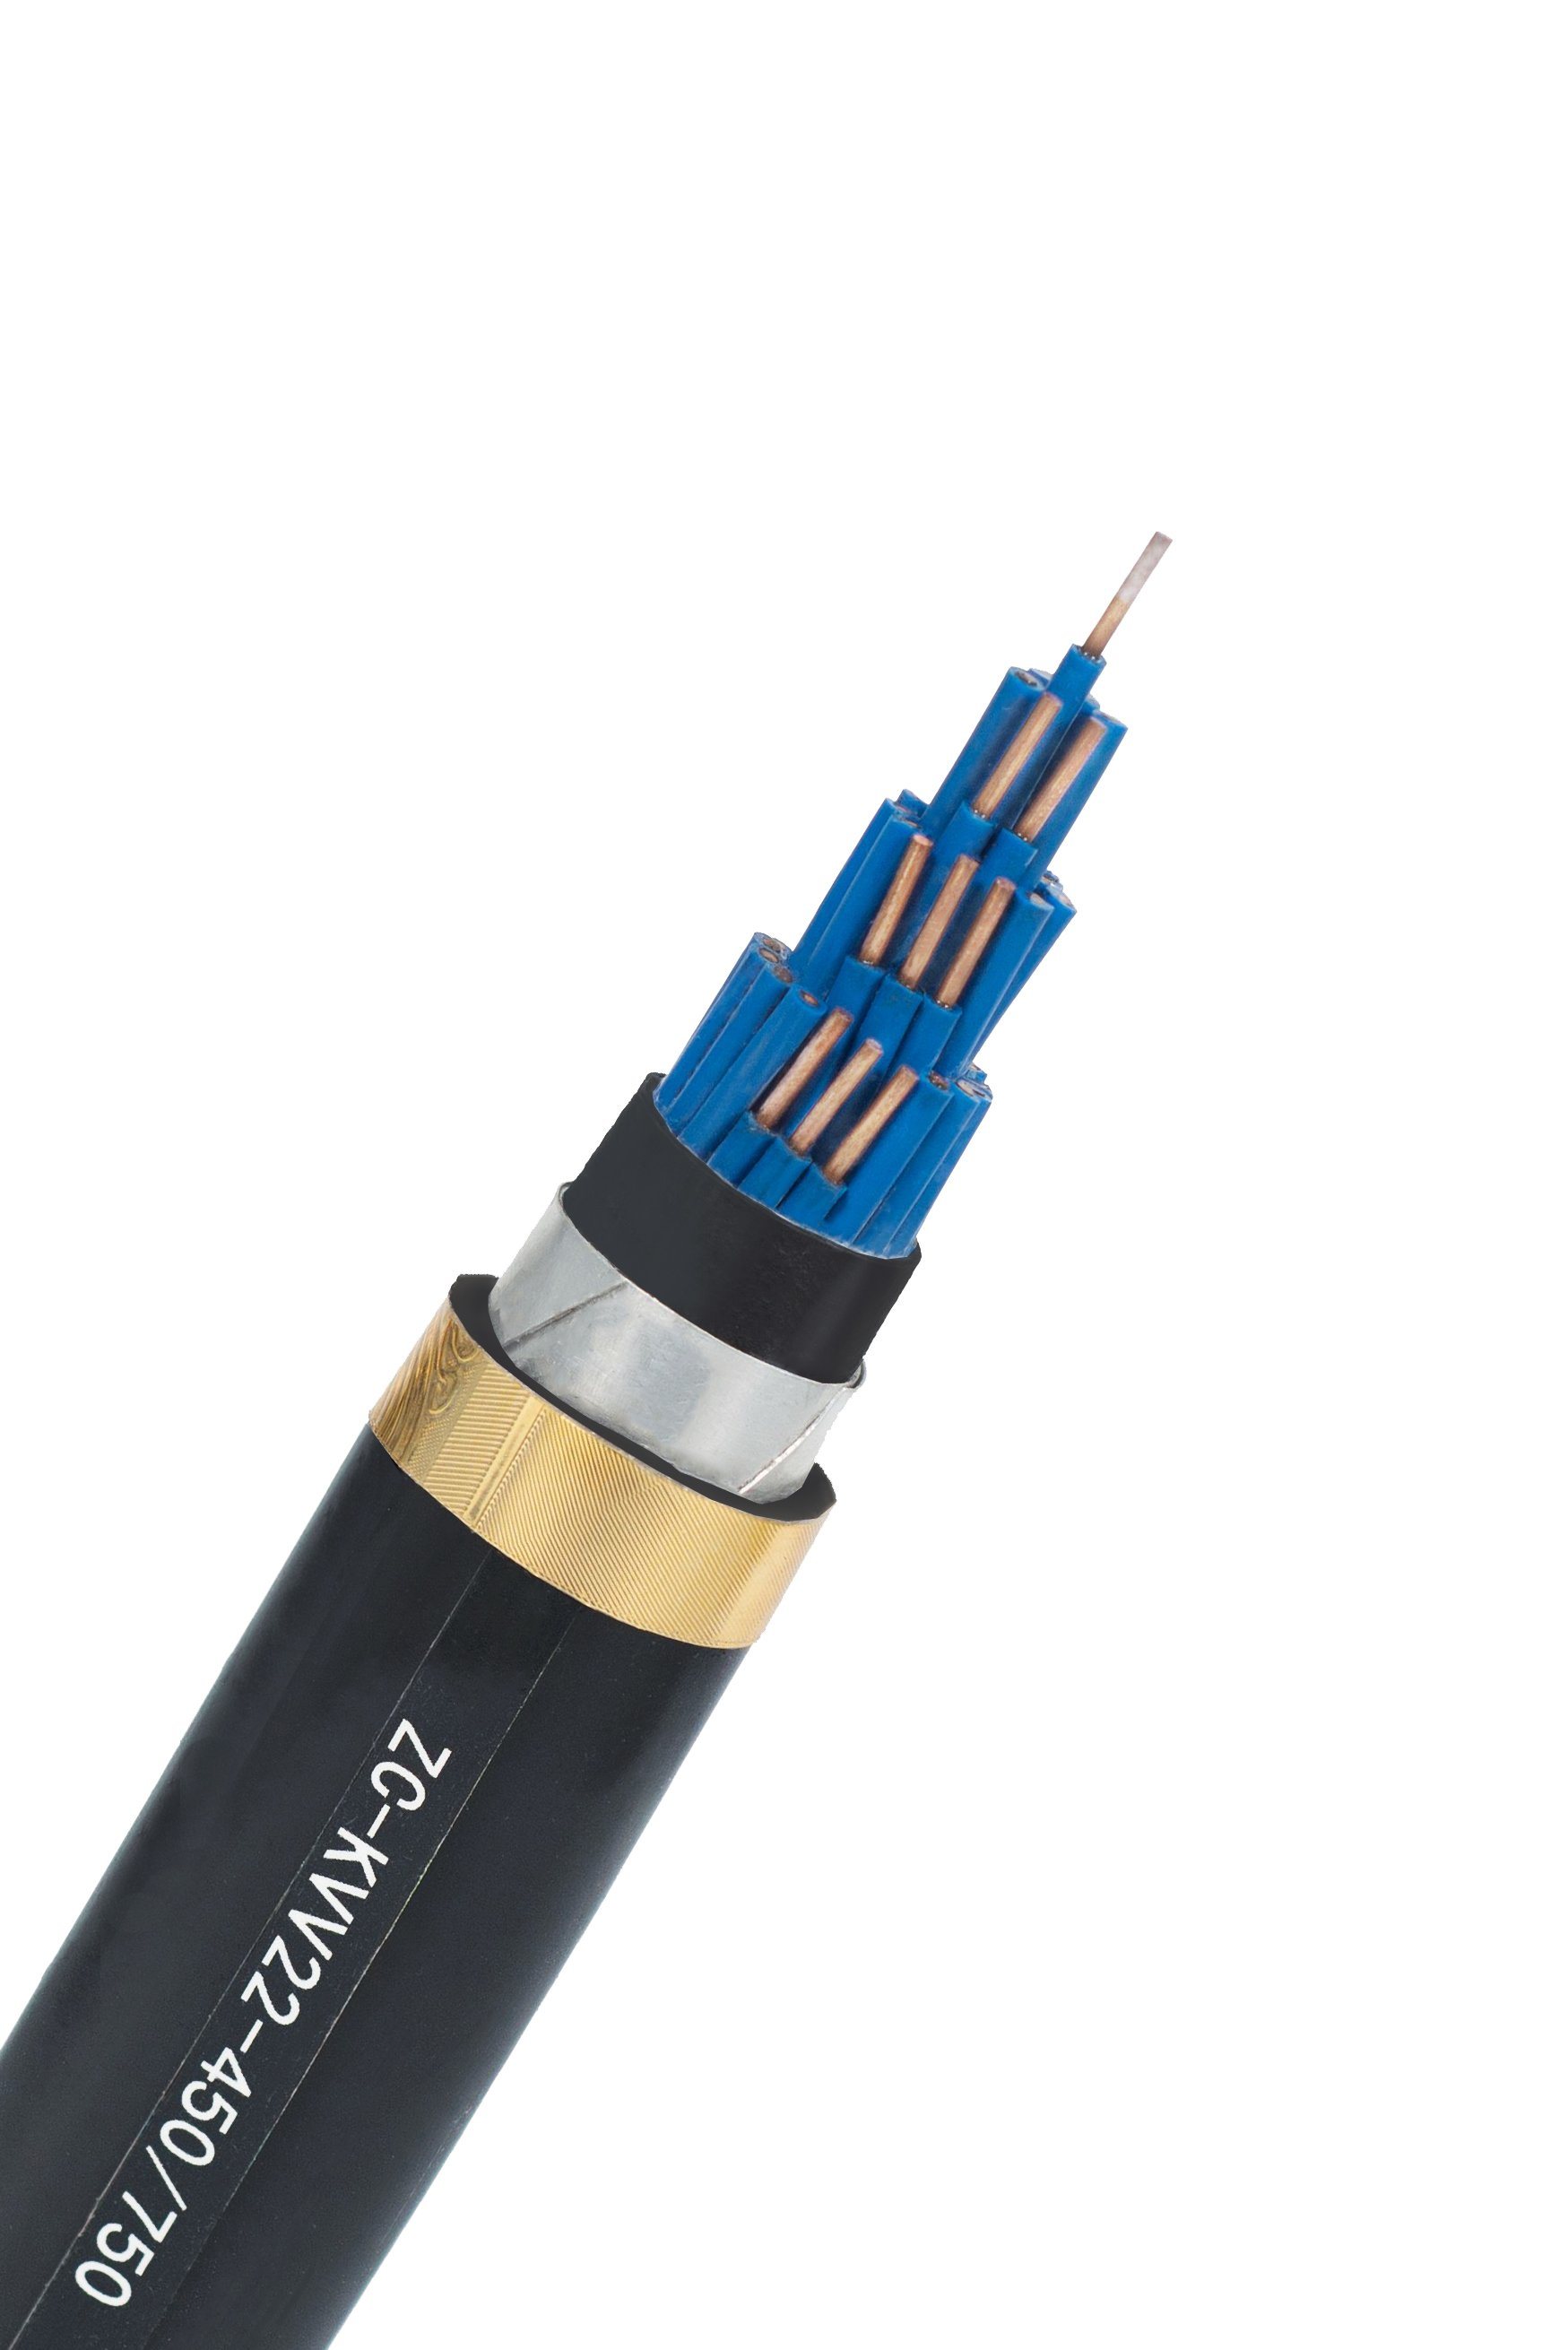 
                Cobre puro de alta calidad Cable Blindado blindado de núcleo múltiple blindado del cable de mando de cable eléctrico de control de 2/2.5mm Cable
            